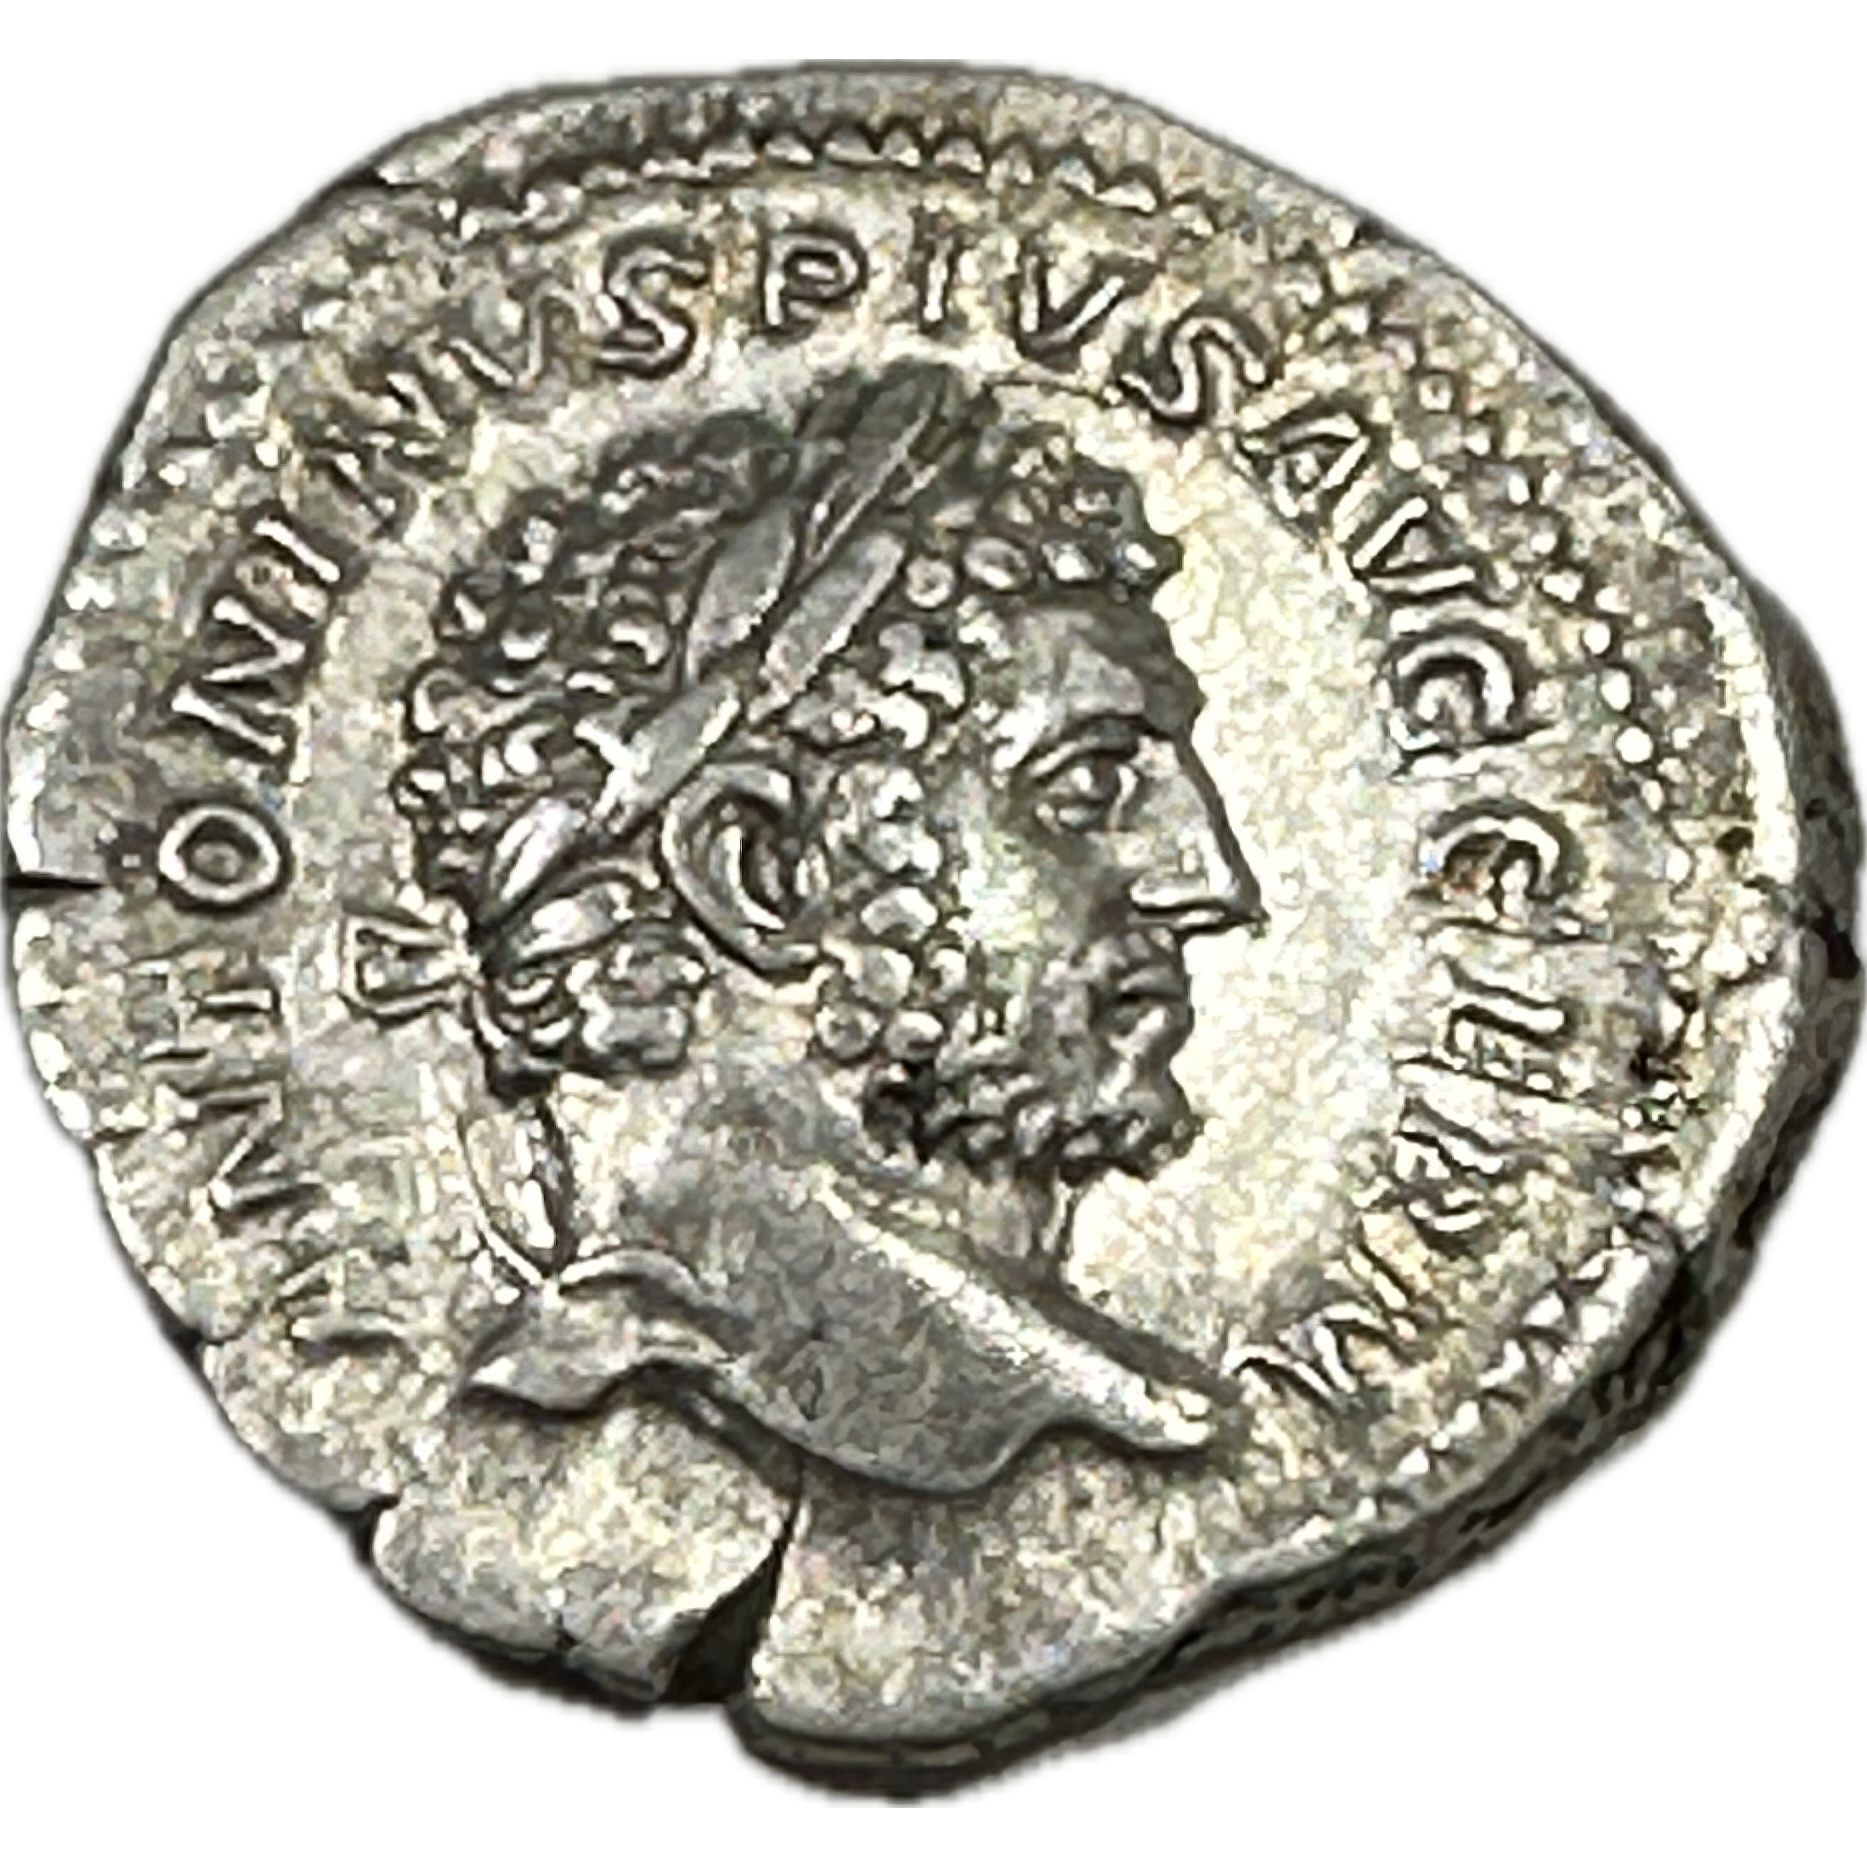 Roman Coin, 95-98% Silver Denarius Prehistoric Online